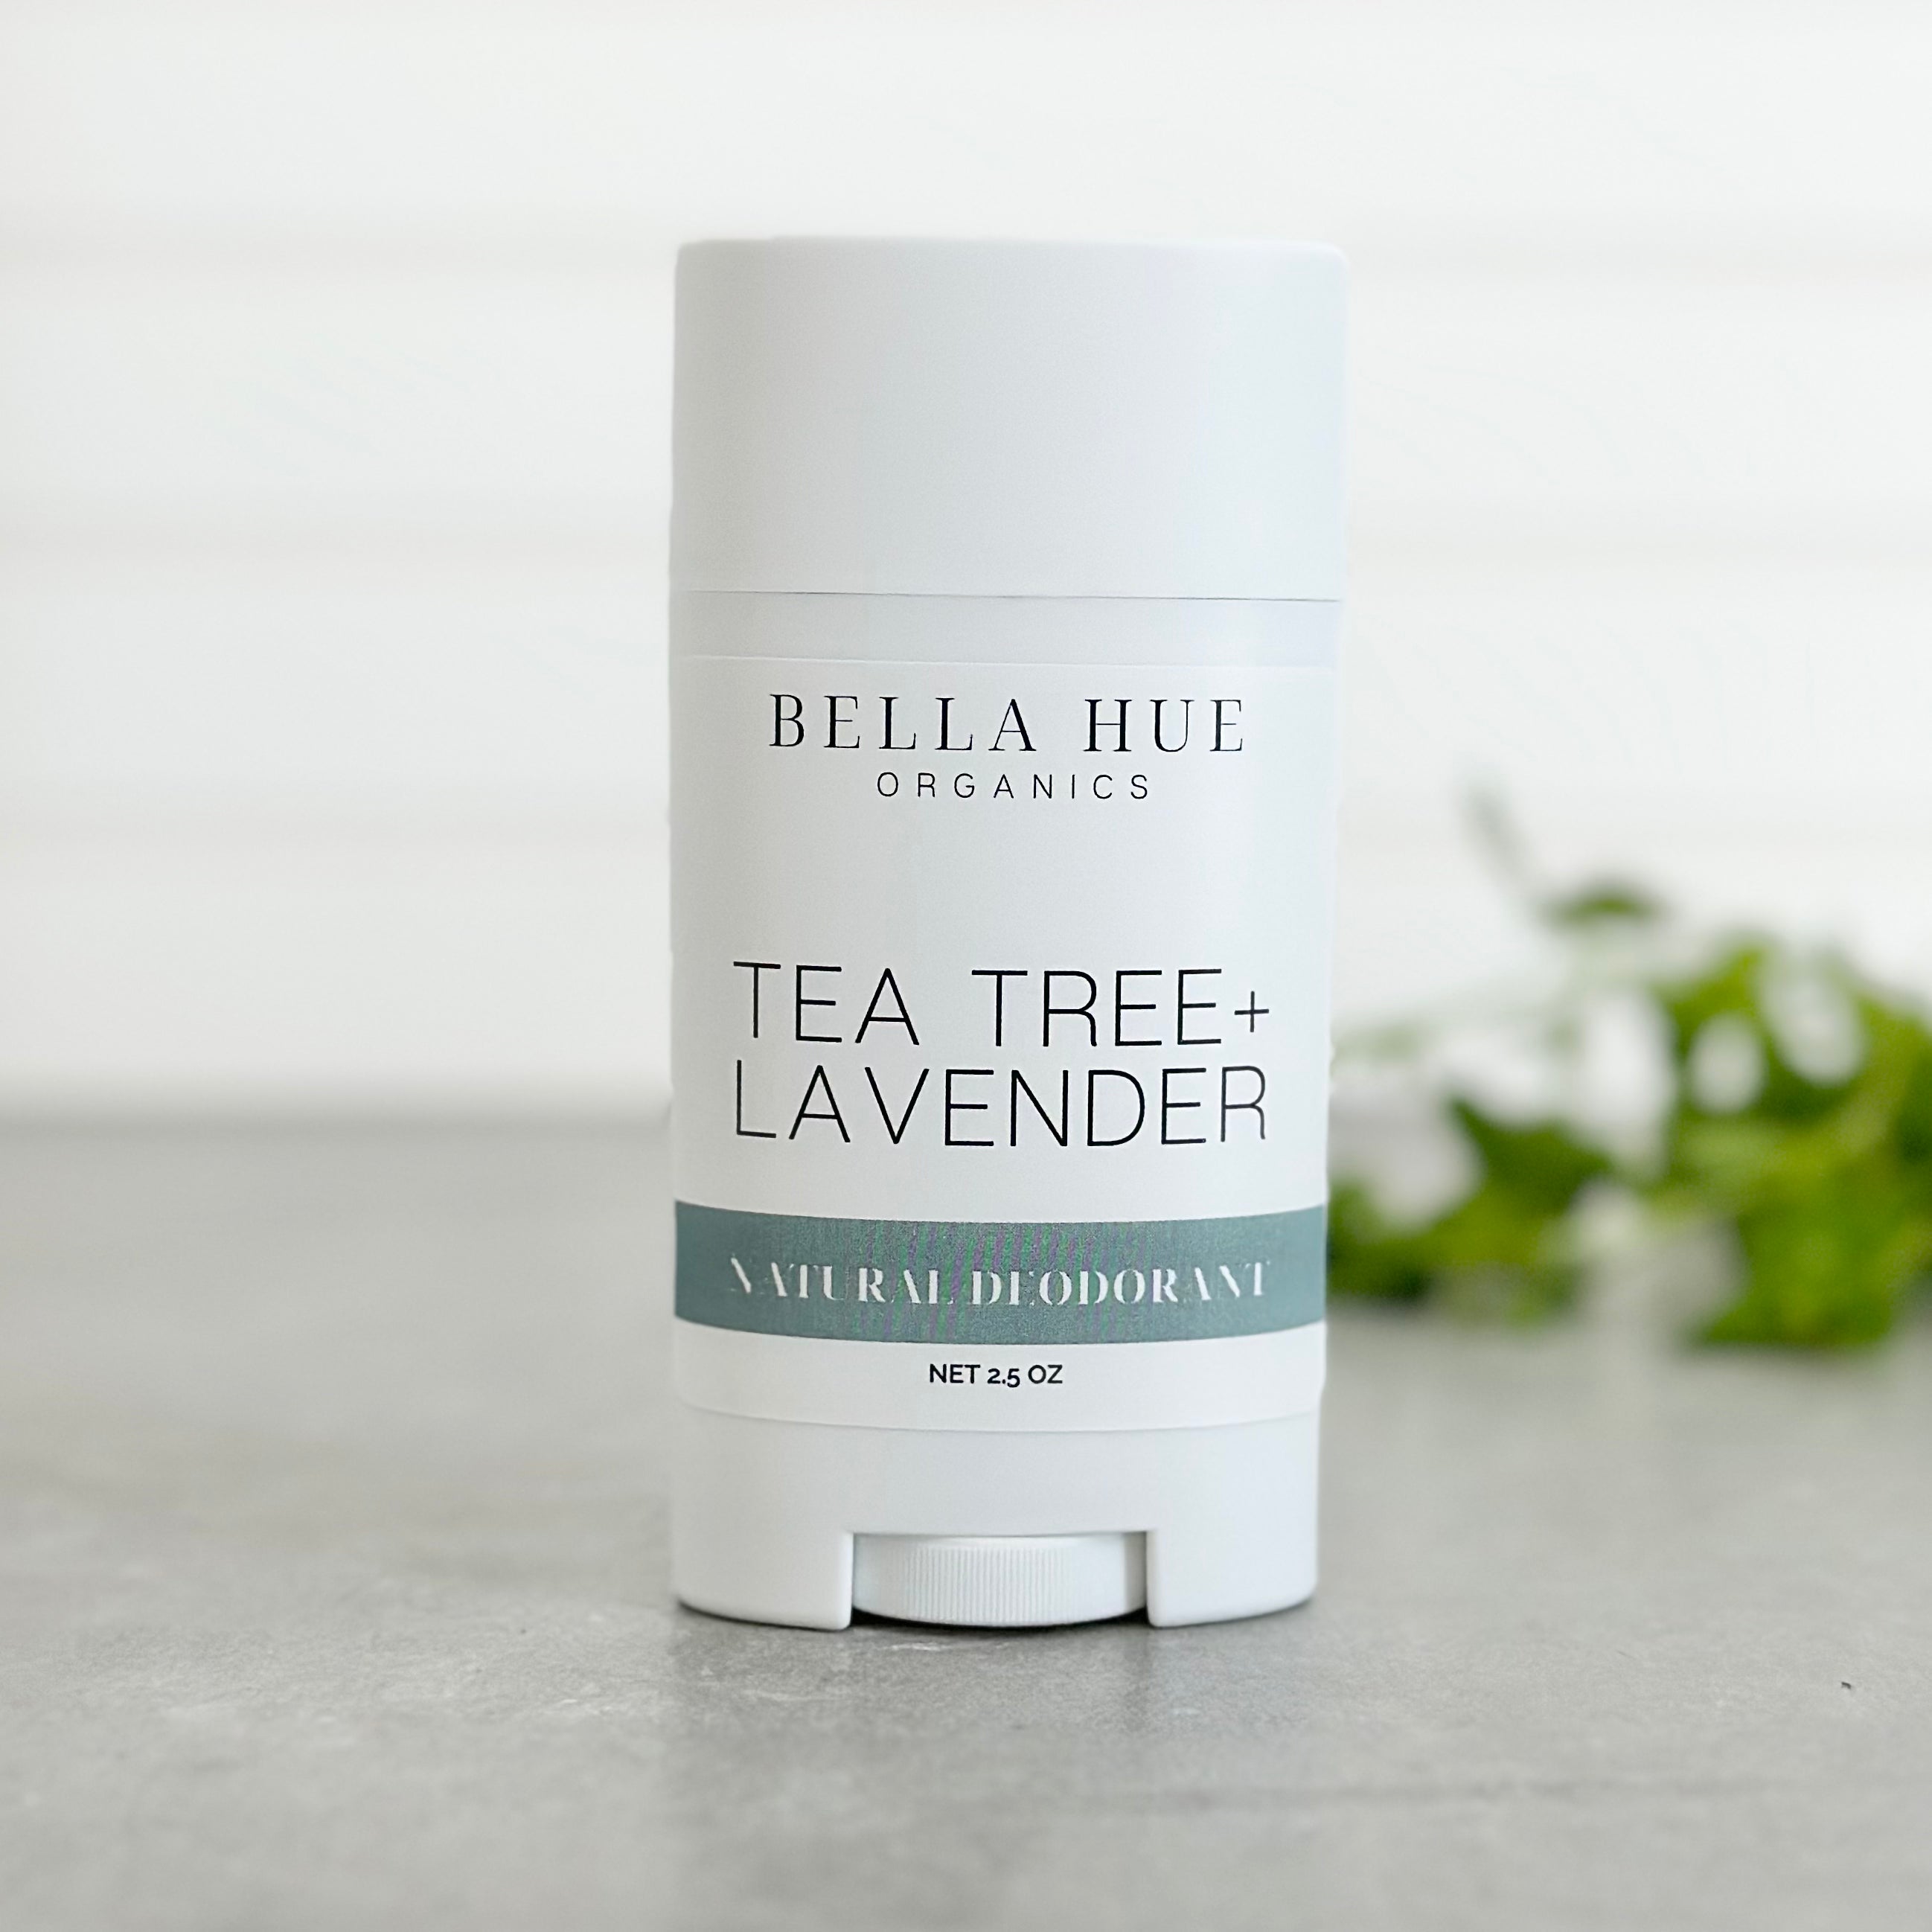 Tea Tree + Lavender Deodorant